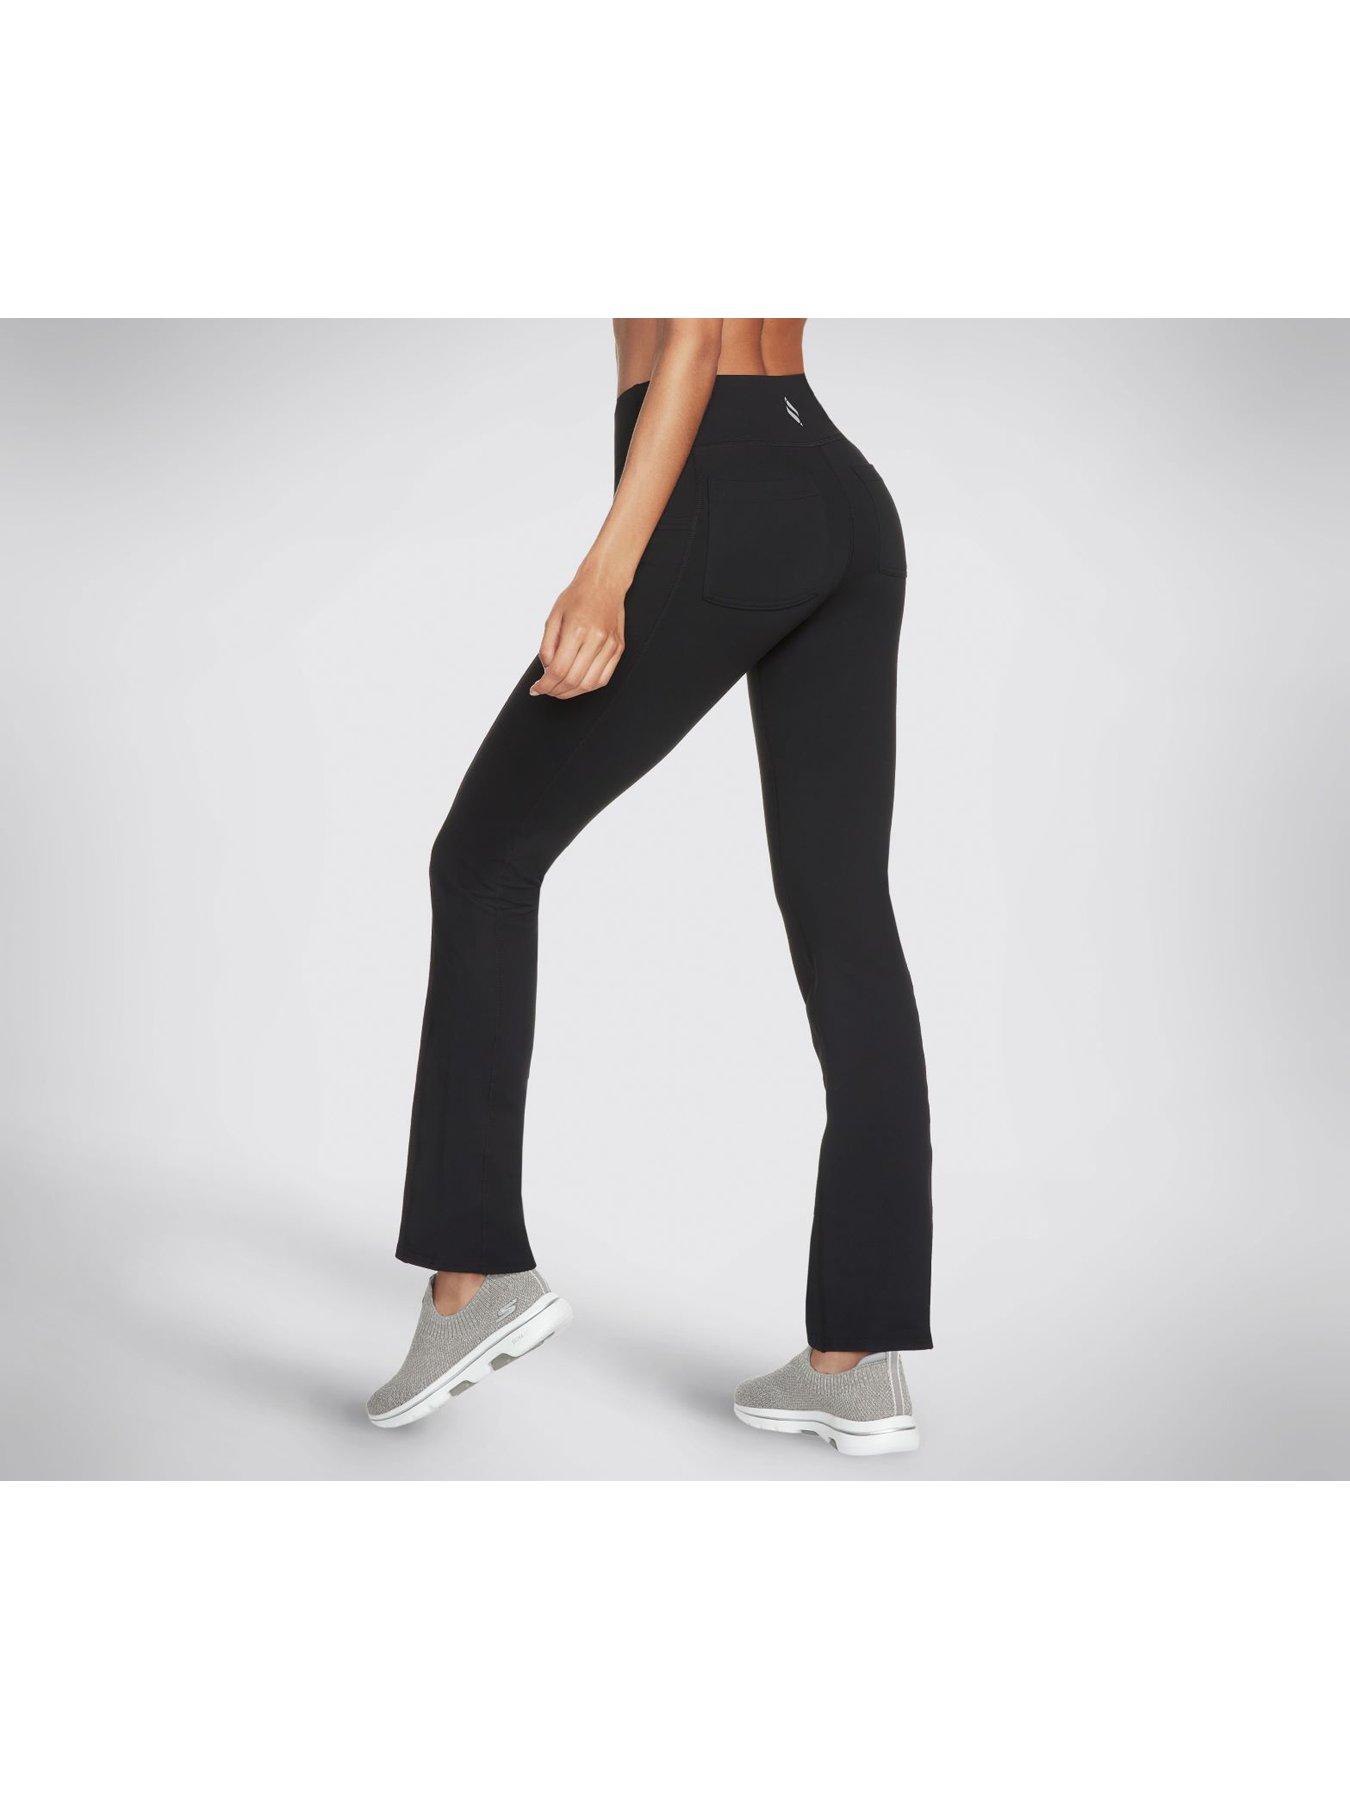 Skechers Go Walk Women's Walk Tight Floral Leggings in Black & Side Pockets  XS,S